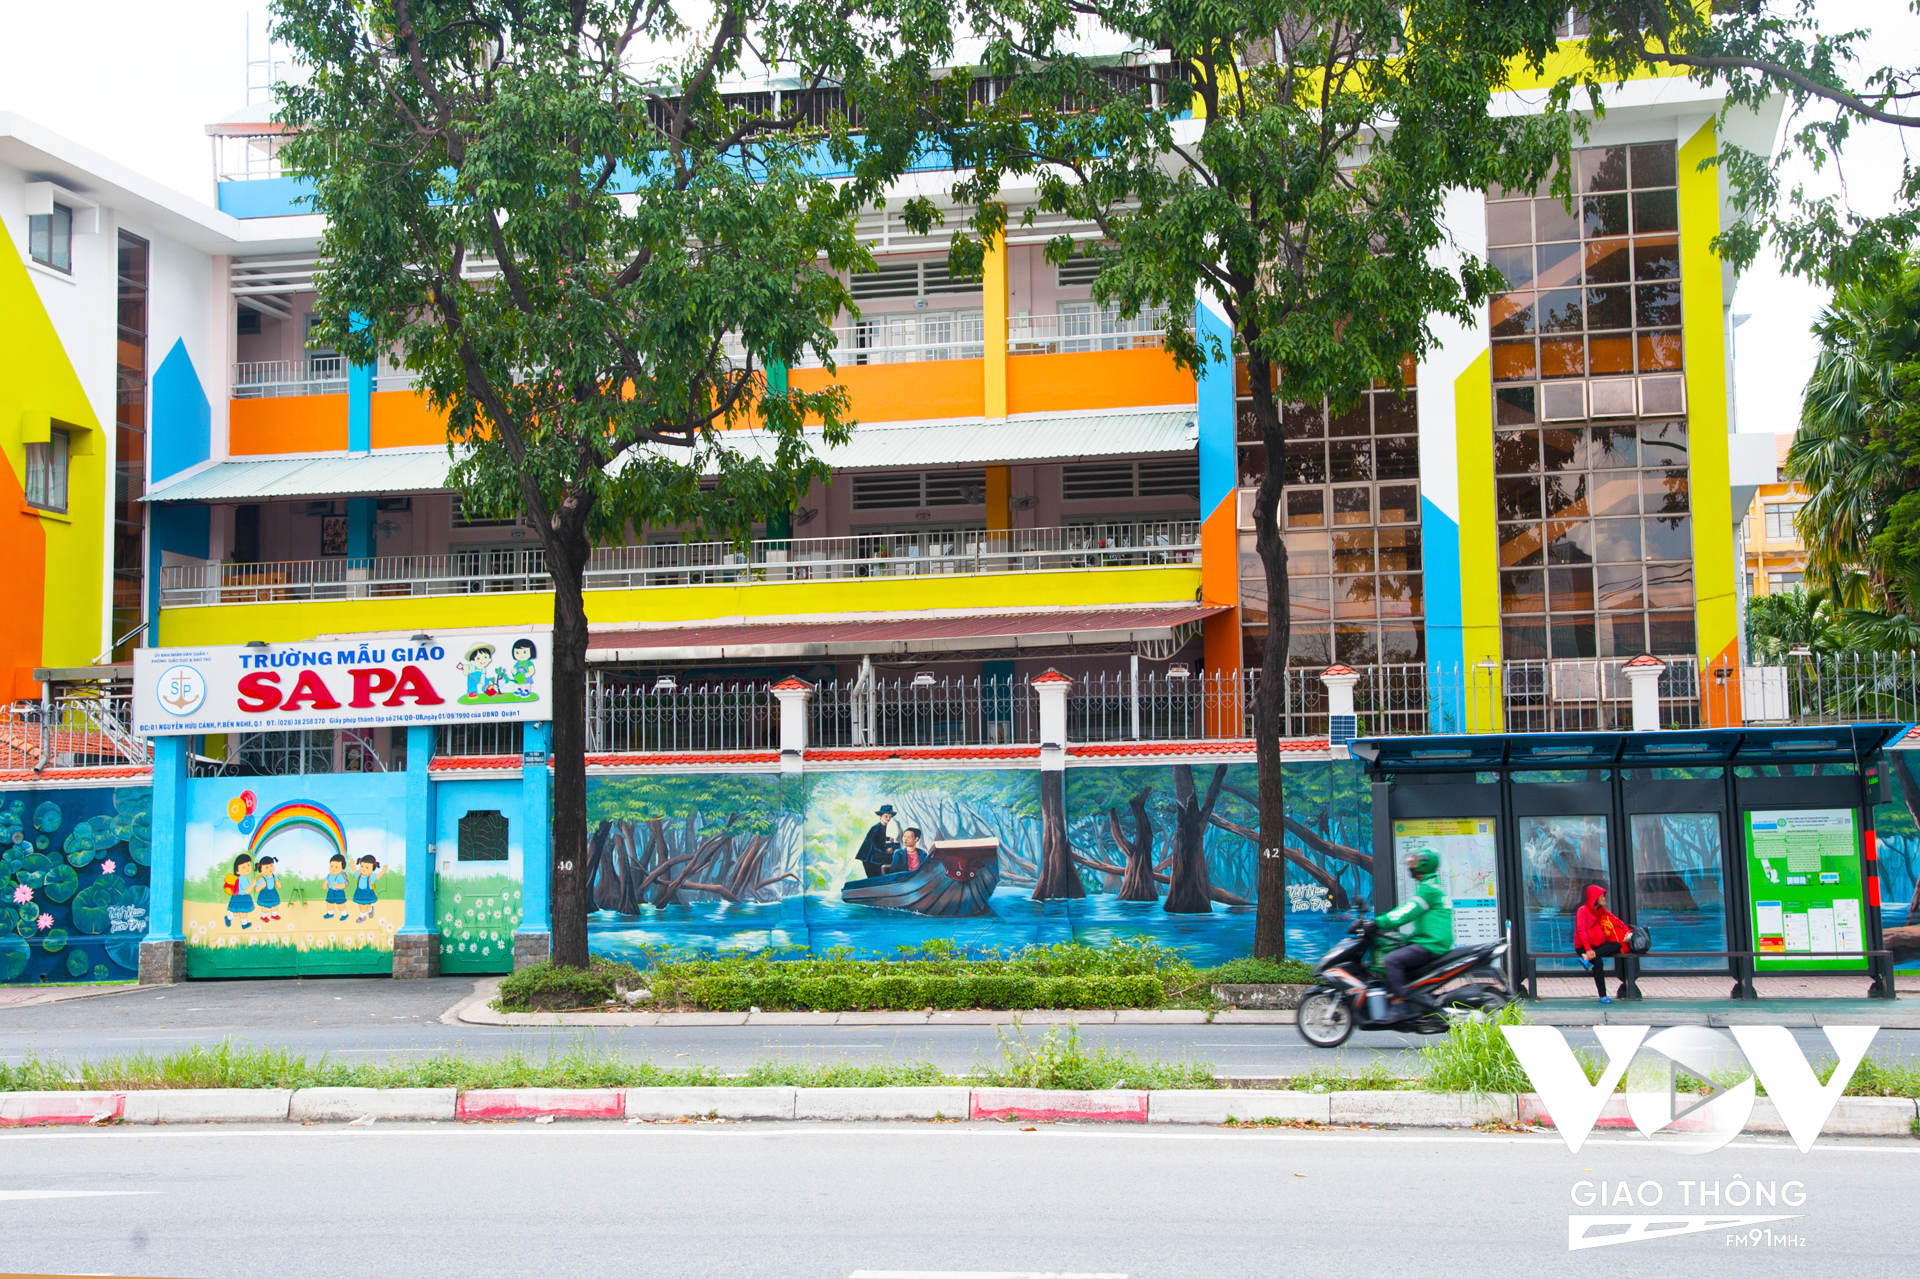 Bên cạnh đó, theo thời gian vẫn cần duy tu, bảo dưỡng các tác phẩm nghệ thuật đường phố để phát huy tác dụng thẩm mỹ cảnh quan đô thị, trở thành điểm check-in thú vị thu hút du khách, góp phần phát triển du lịch thành phố.